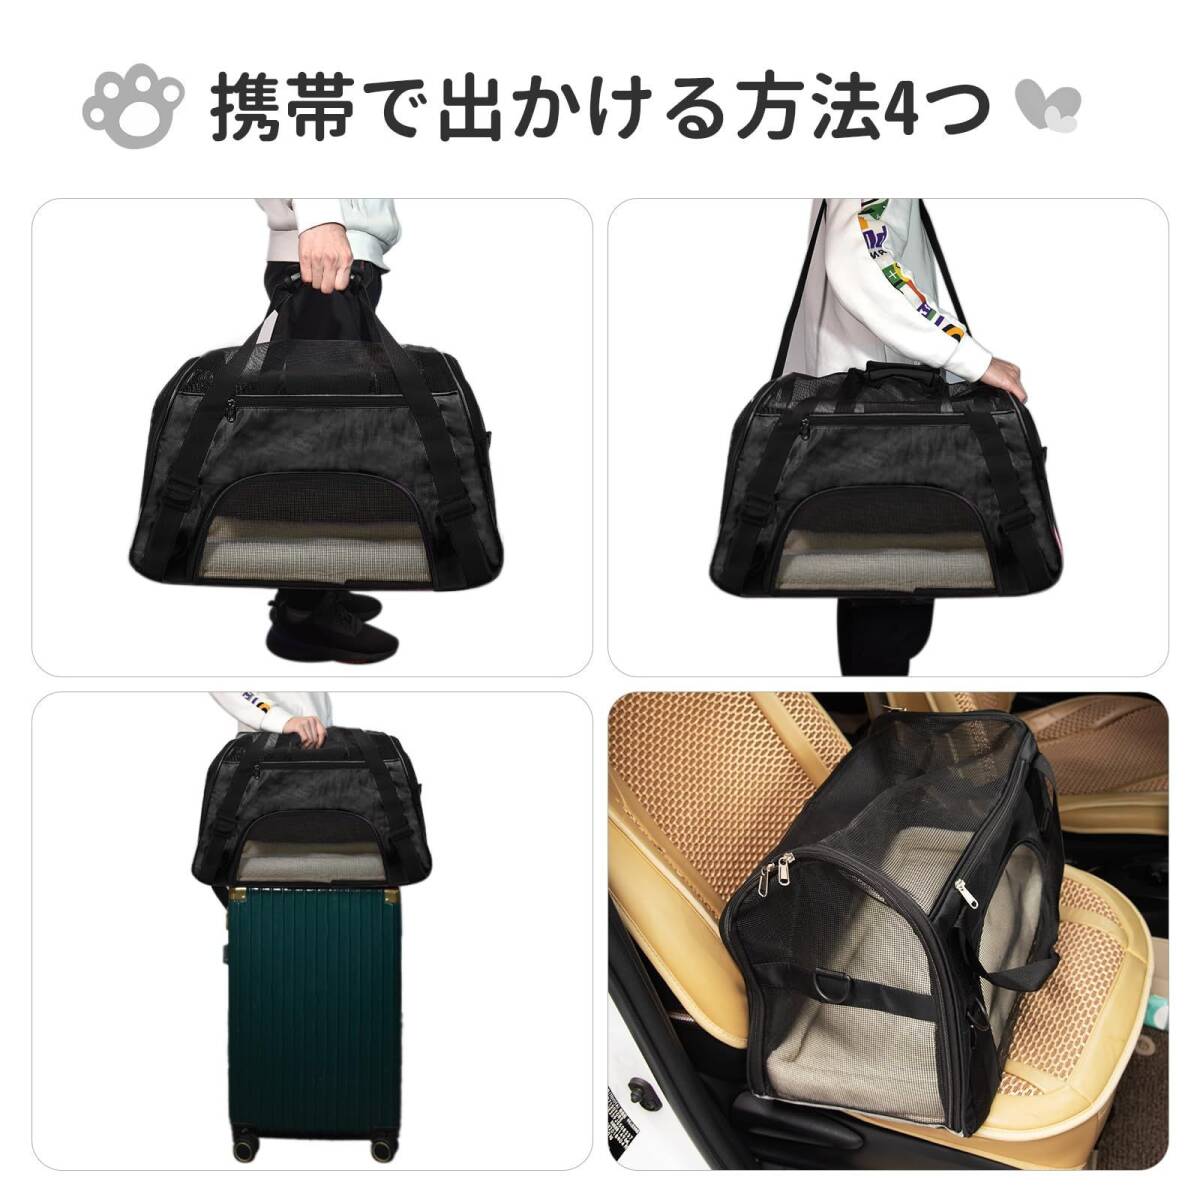  черный домашнее животное переносная сумка кошка для коврик имеется сумка на плечо складной Carry 